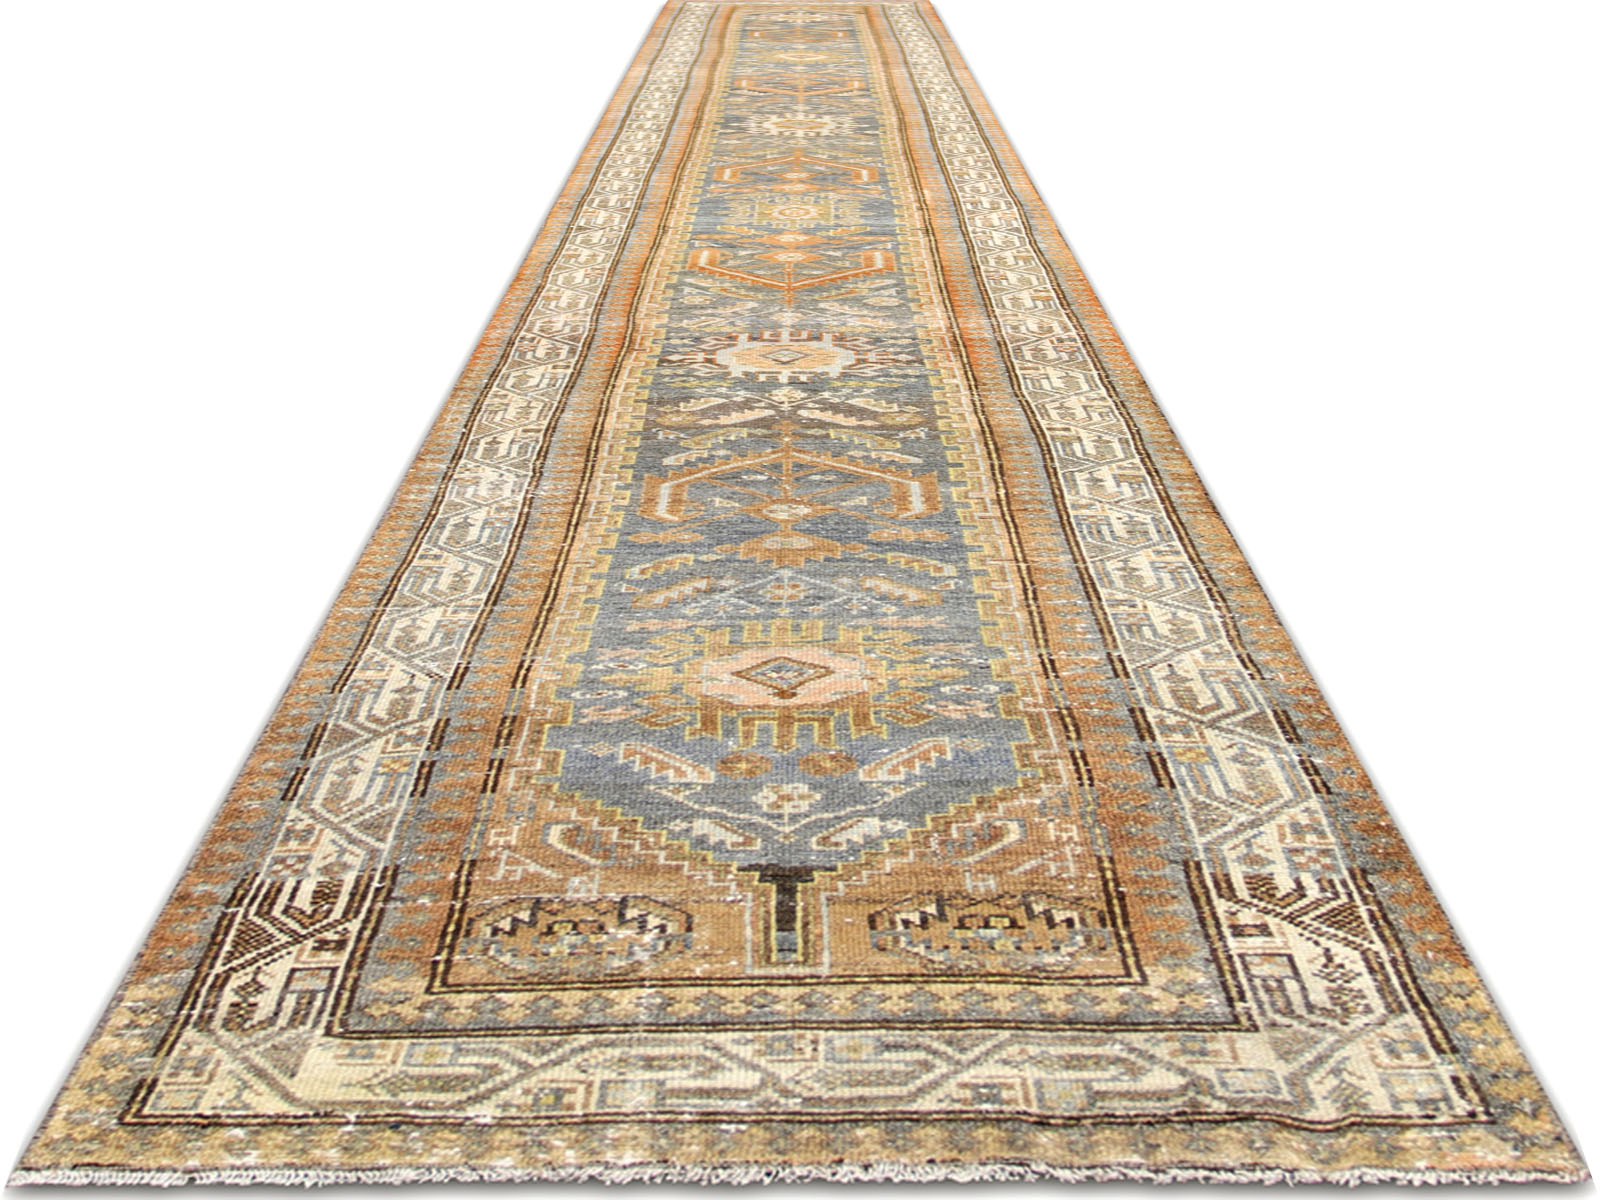 Antique Persian Melayer Runner - 2'8" x 18'1"